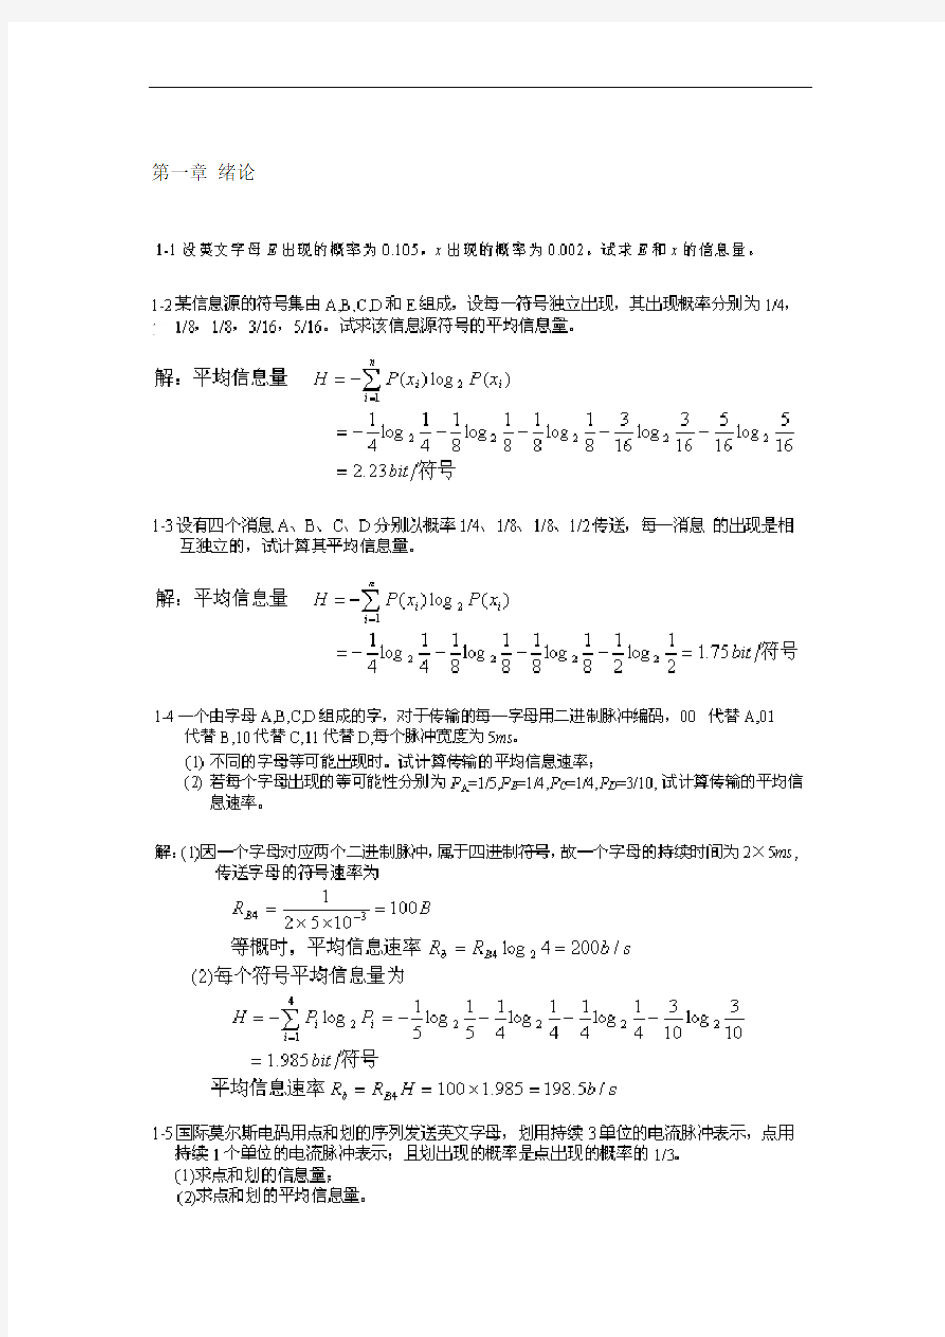 通信原理第六版樊昌信课后问题详解完整版 (1)